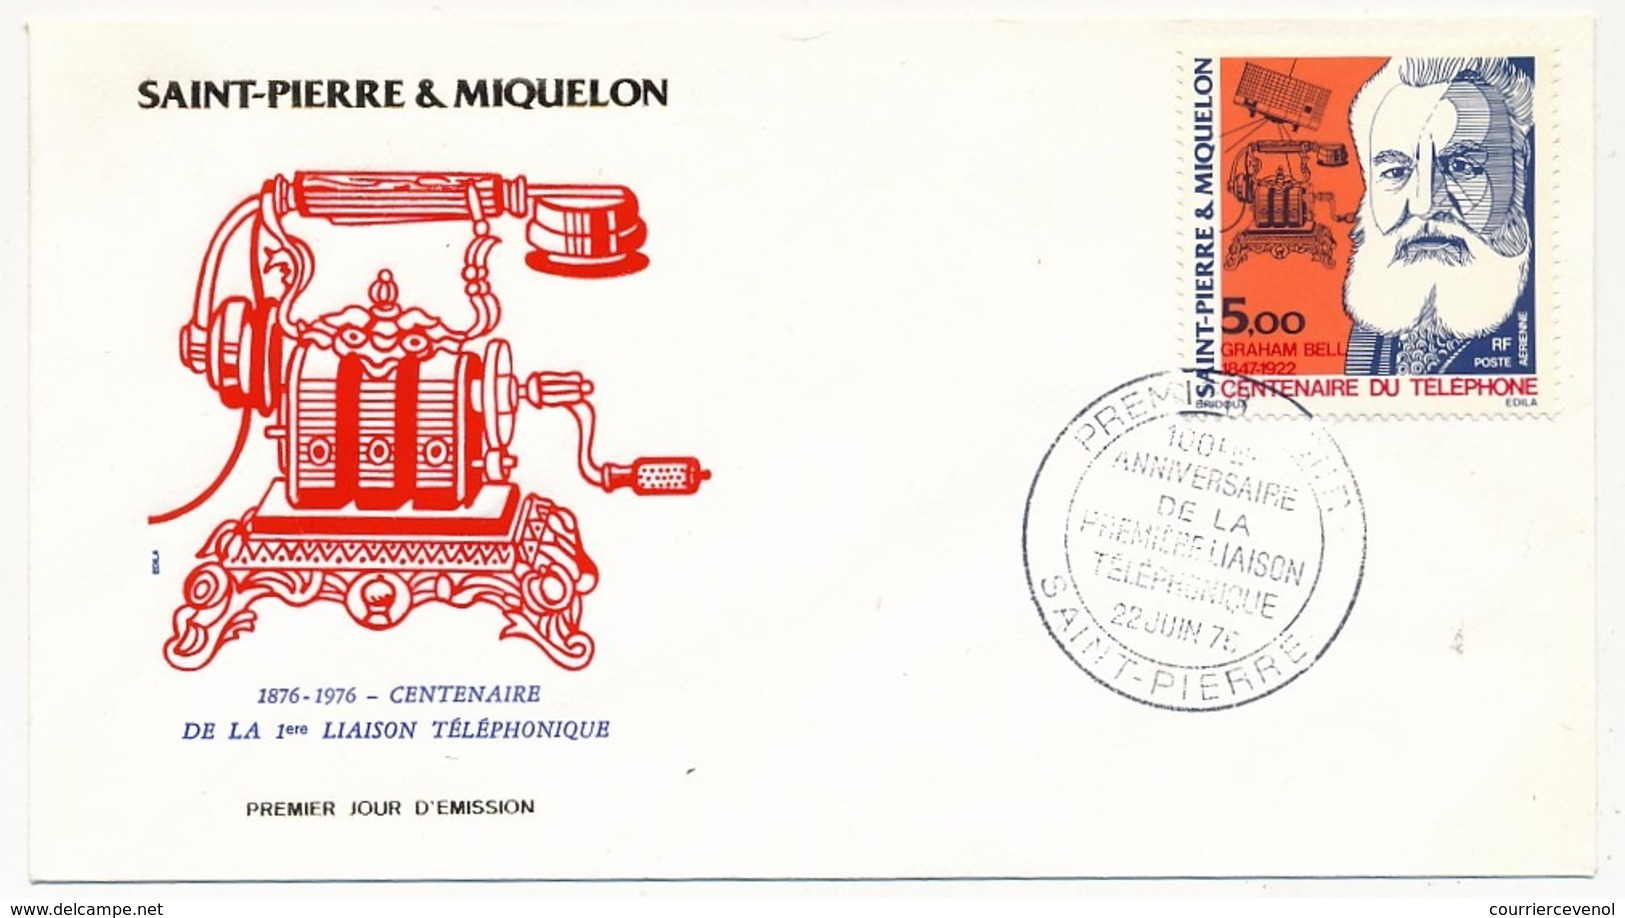 SAINT PIERRE ET MIQUELON - Enveloppe FDC - Centenaire De La Première Liaison Téléphonique - G. BELL - 1976 - Telecom